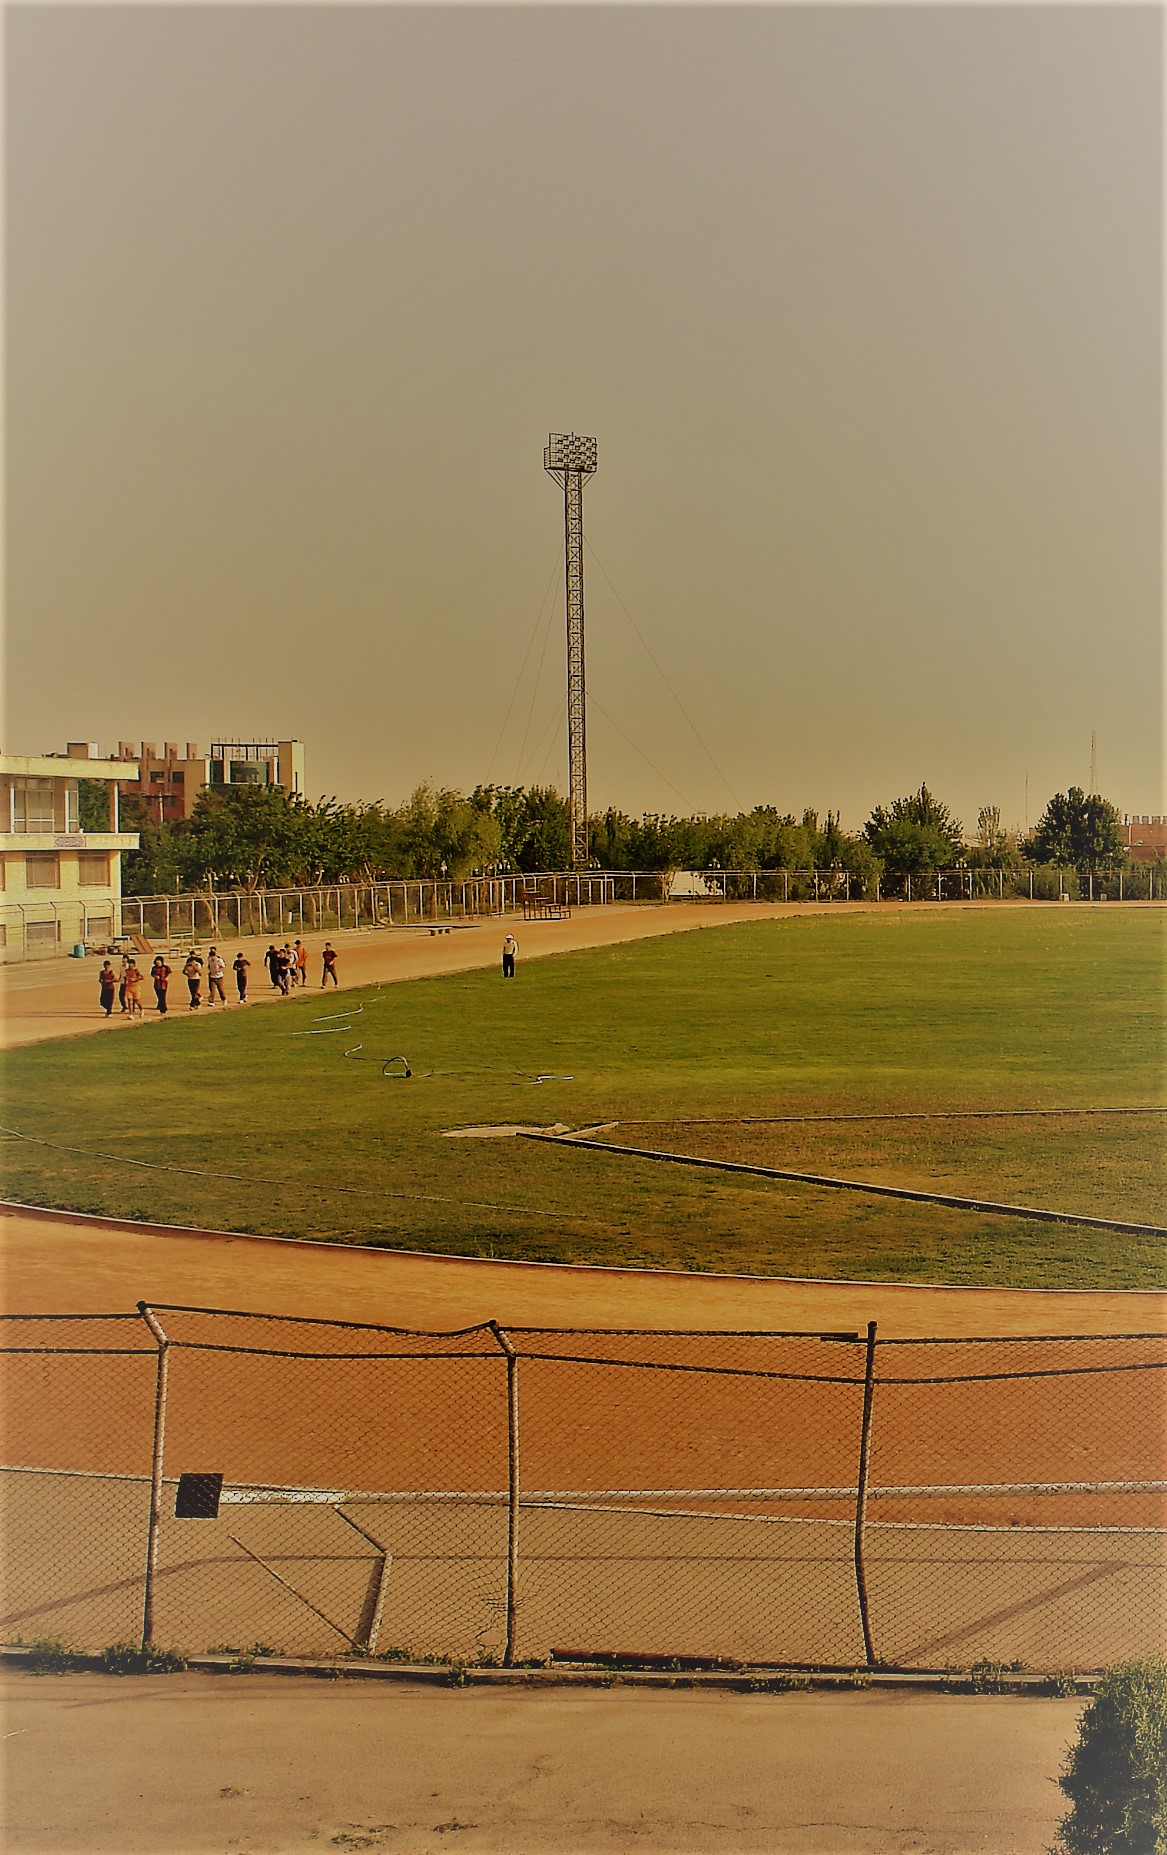 باشگاه پیست دوومیدانی چمن فوتبال شماره 1 در ستاو